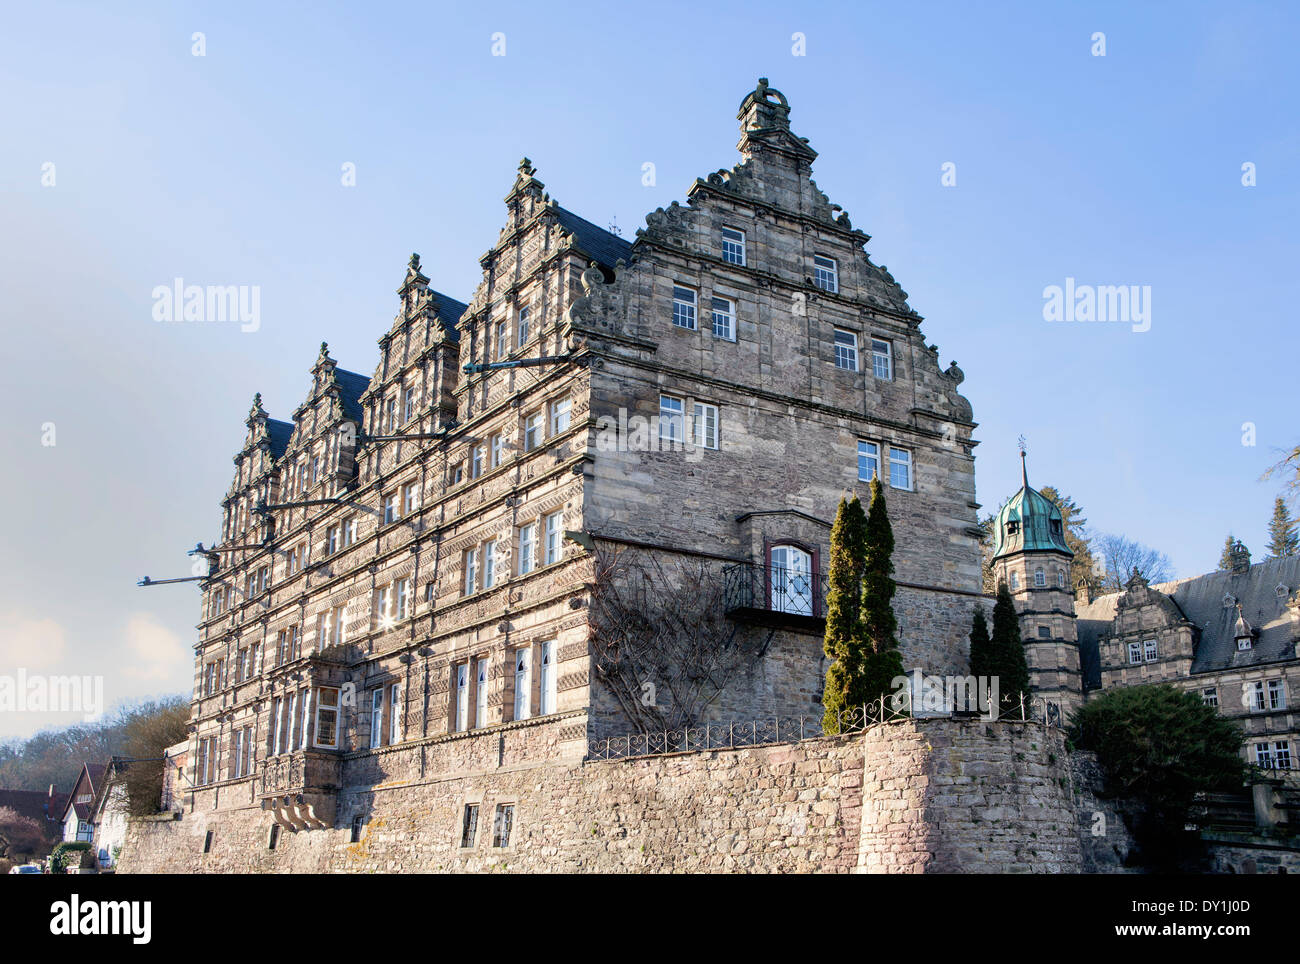 Haemelschenburg Château près de Hamelin, Weserbergland, Basse-Saxe, Allemagne, Europe Banque D'Images